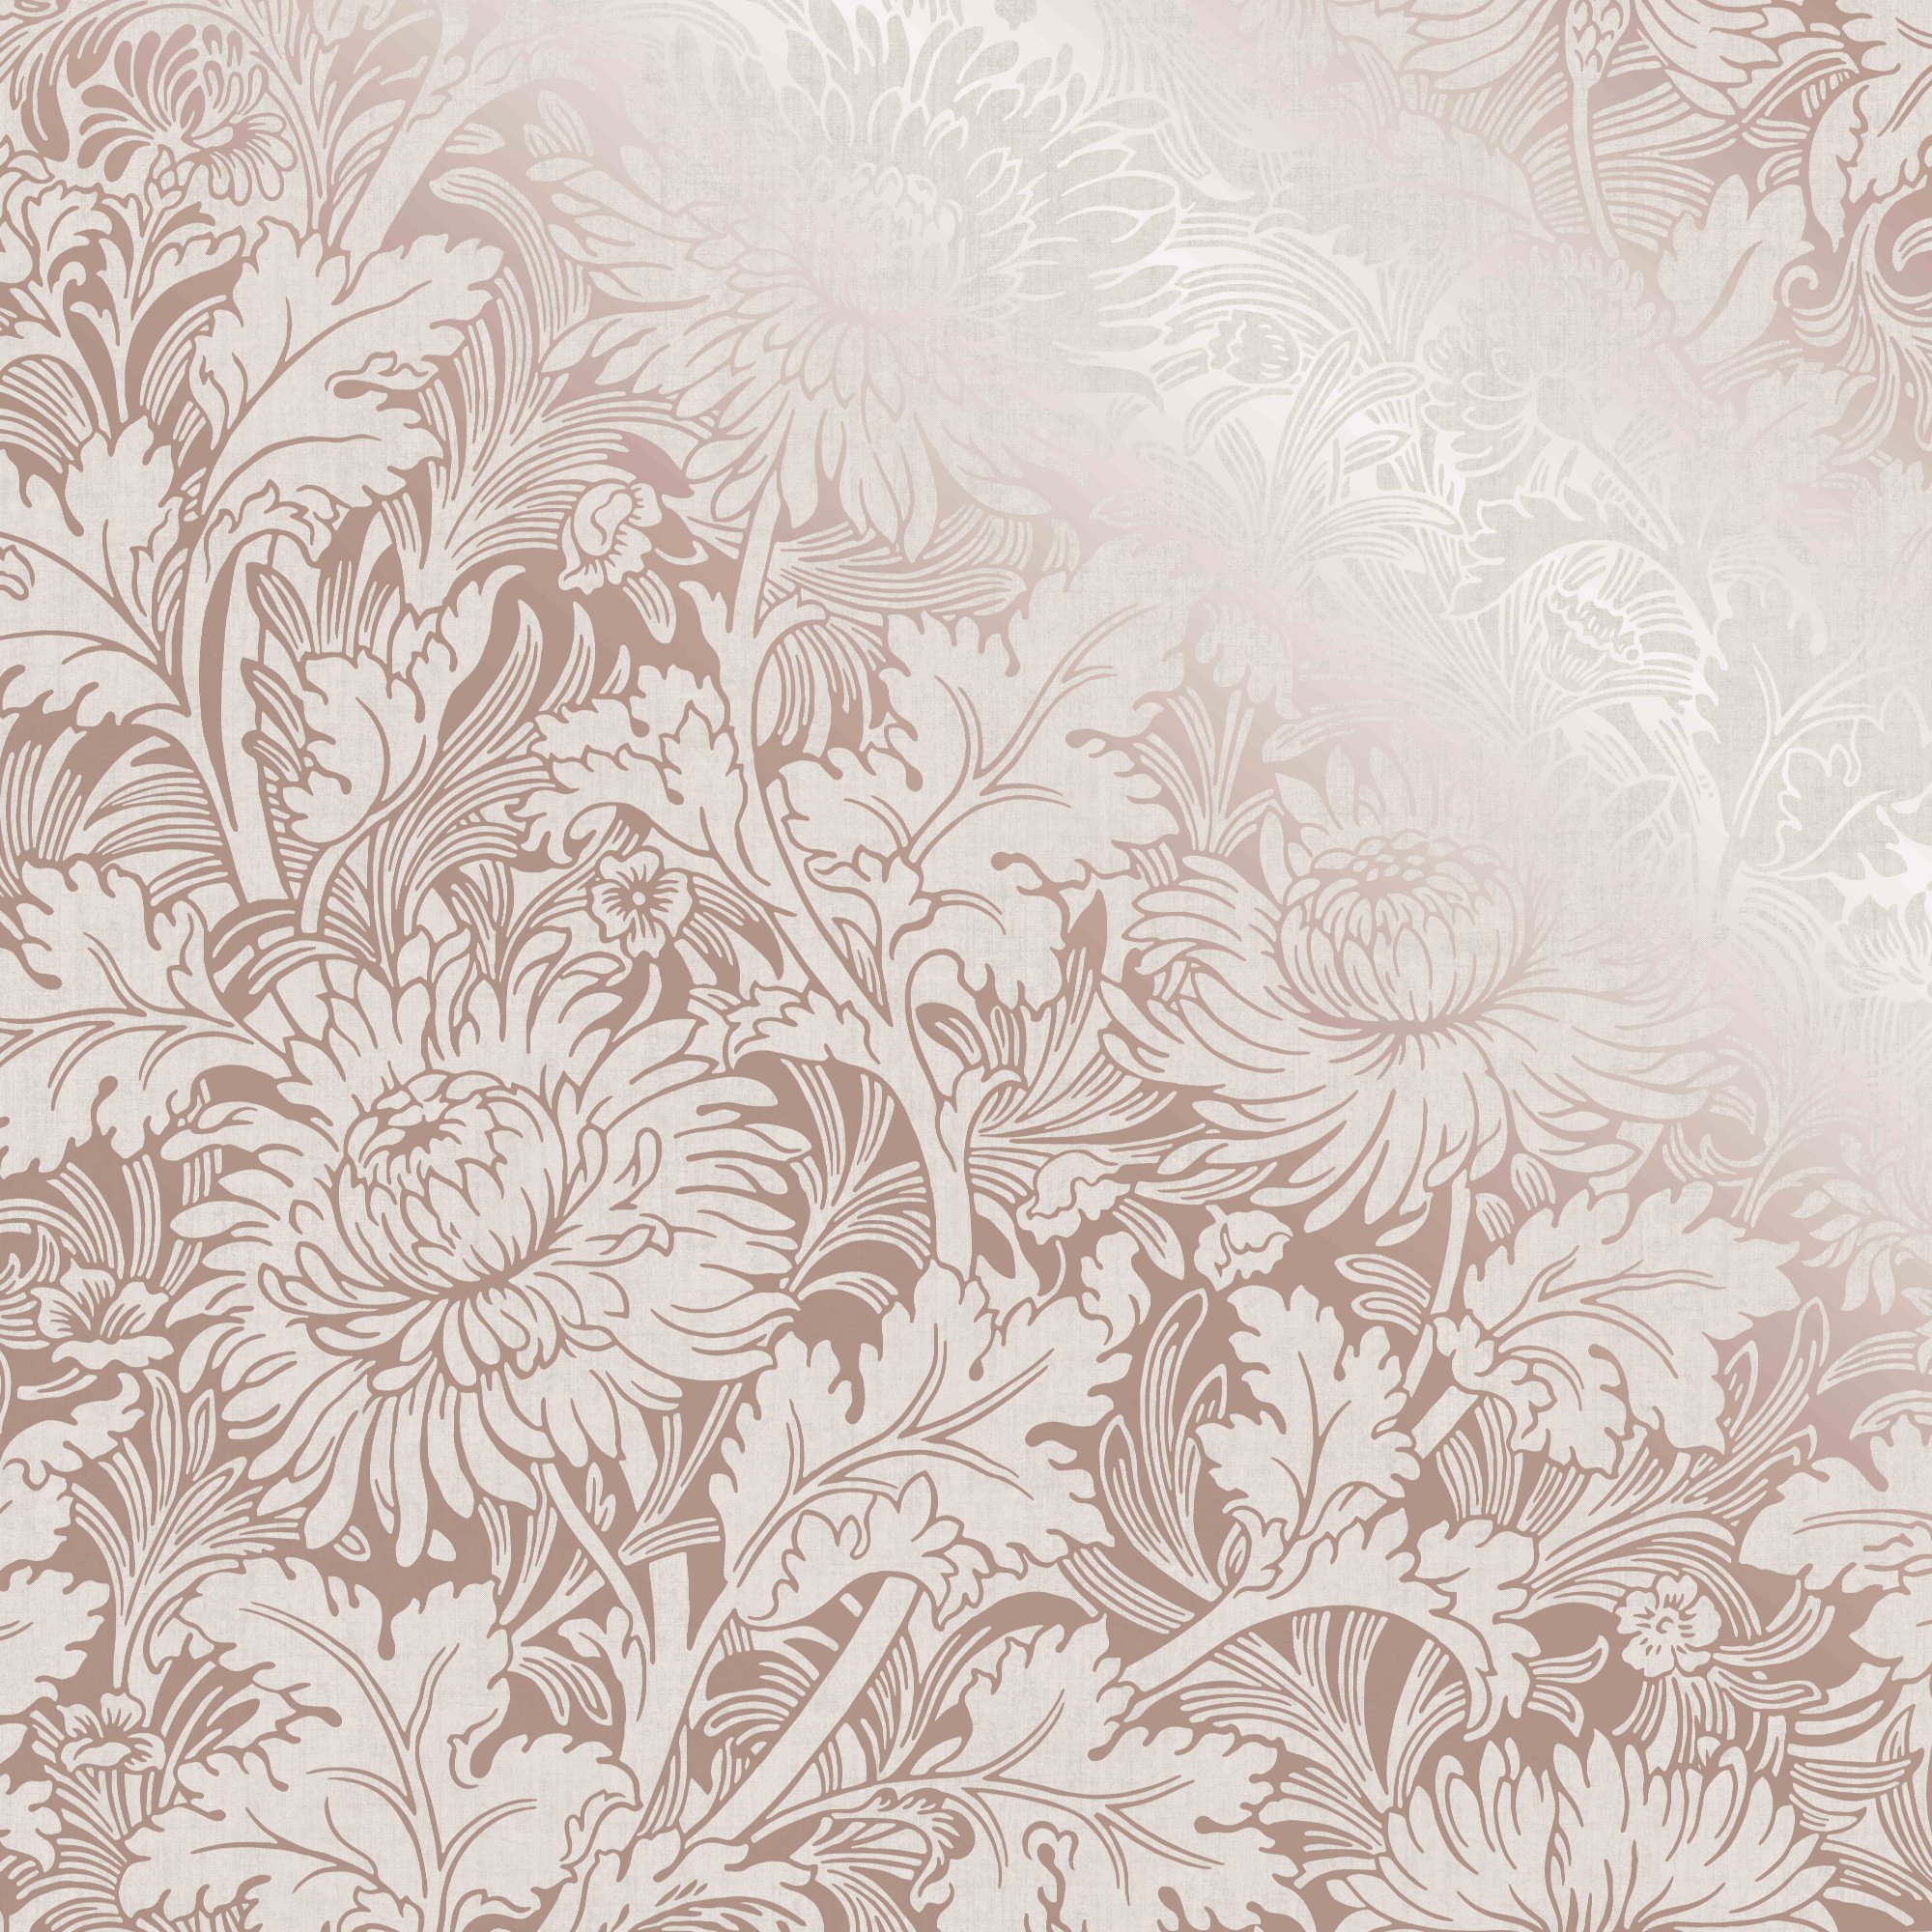 rose gold wallpaper,wallpaper,pattern,floral design,design,plant